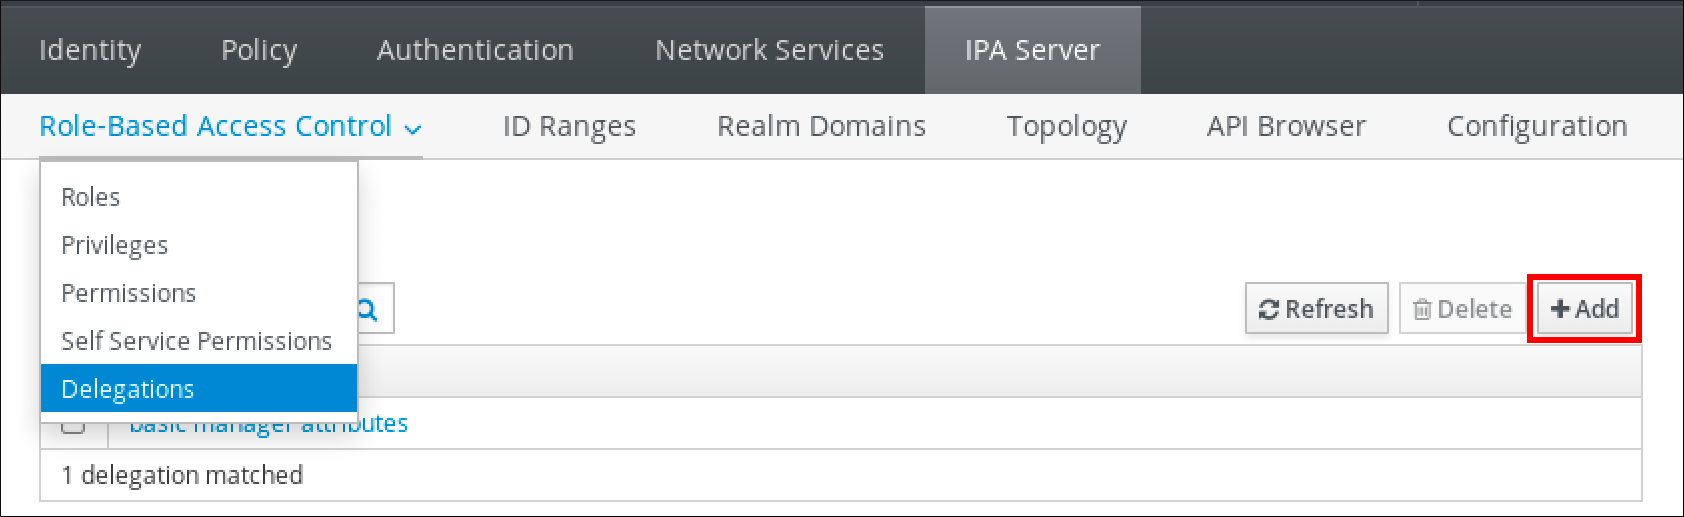 IdM Web UI のスクリーンショット。"IPA Server" タブの "Role-Based Access Control" ドロップダウンサブメニューの内容が表示されています。ロールベースのアクセス制御ドロップダウンメニューには、Roles - Privileges - Permissions - Self Service Permissions - Delegations の 5 つのオプションがあります。